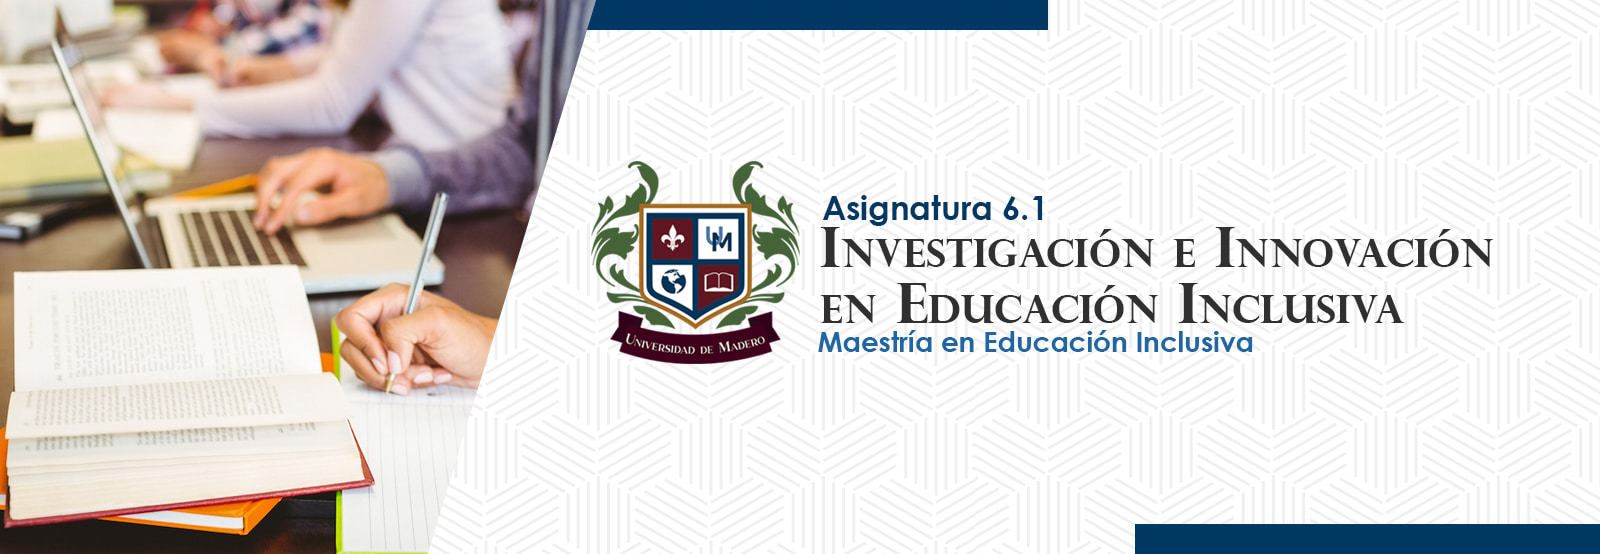 MEI0601 Investigación e Innovación en Educación Inclusiva